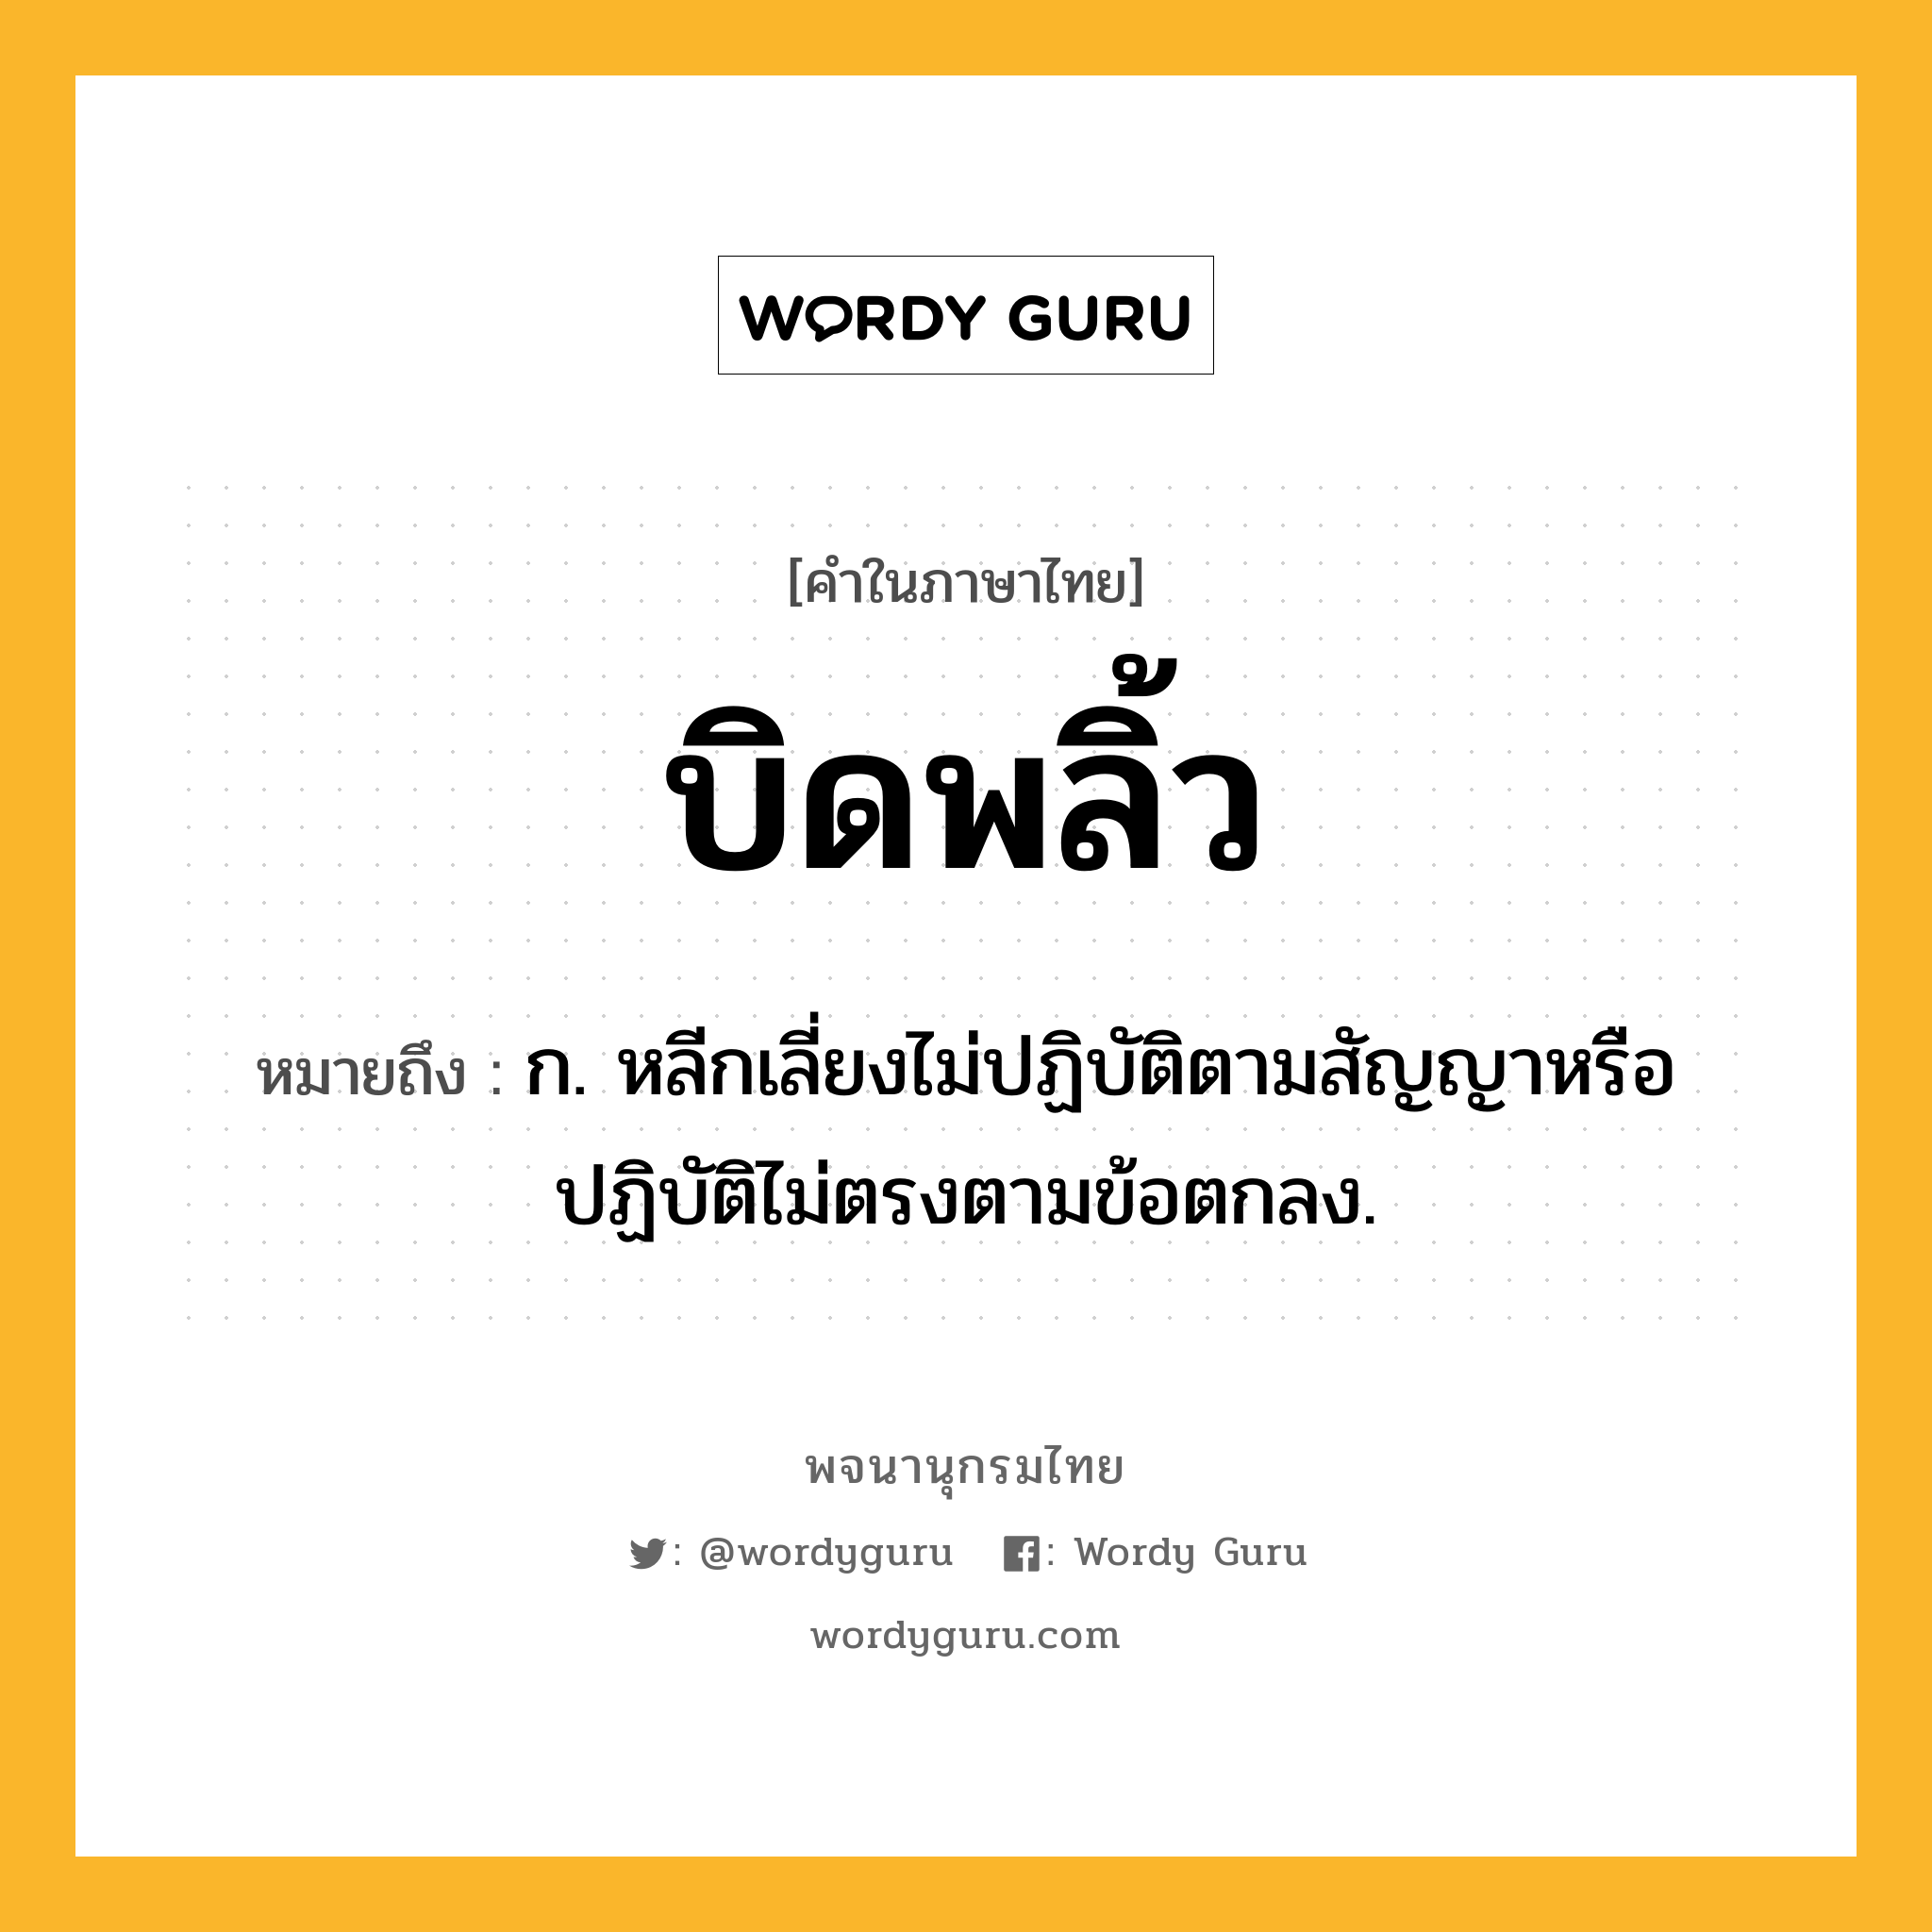 บิดพลิ้ว ความหมาย หมายถึงอะไร?, คำในภาษาไทย บิดพลิ้ว หมายถึง ก. หลีกเลี่ยงไม่ปฏิบัติตามสัญญาหรือปฏิบัติไม่ตรงตามข้อตกลง.